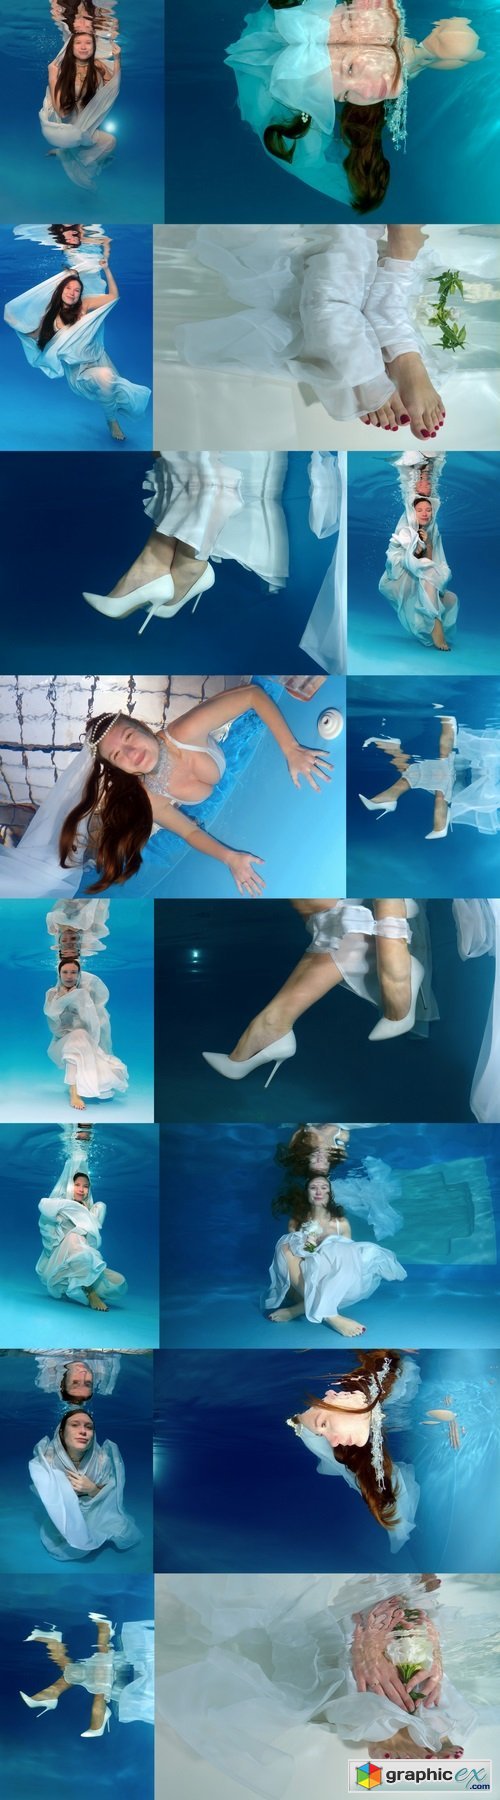 Bride's hands and feet, flowers, underwater wedding in pool